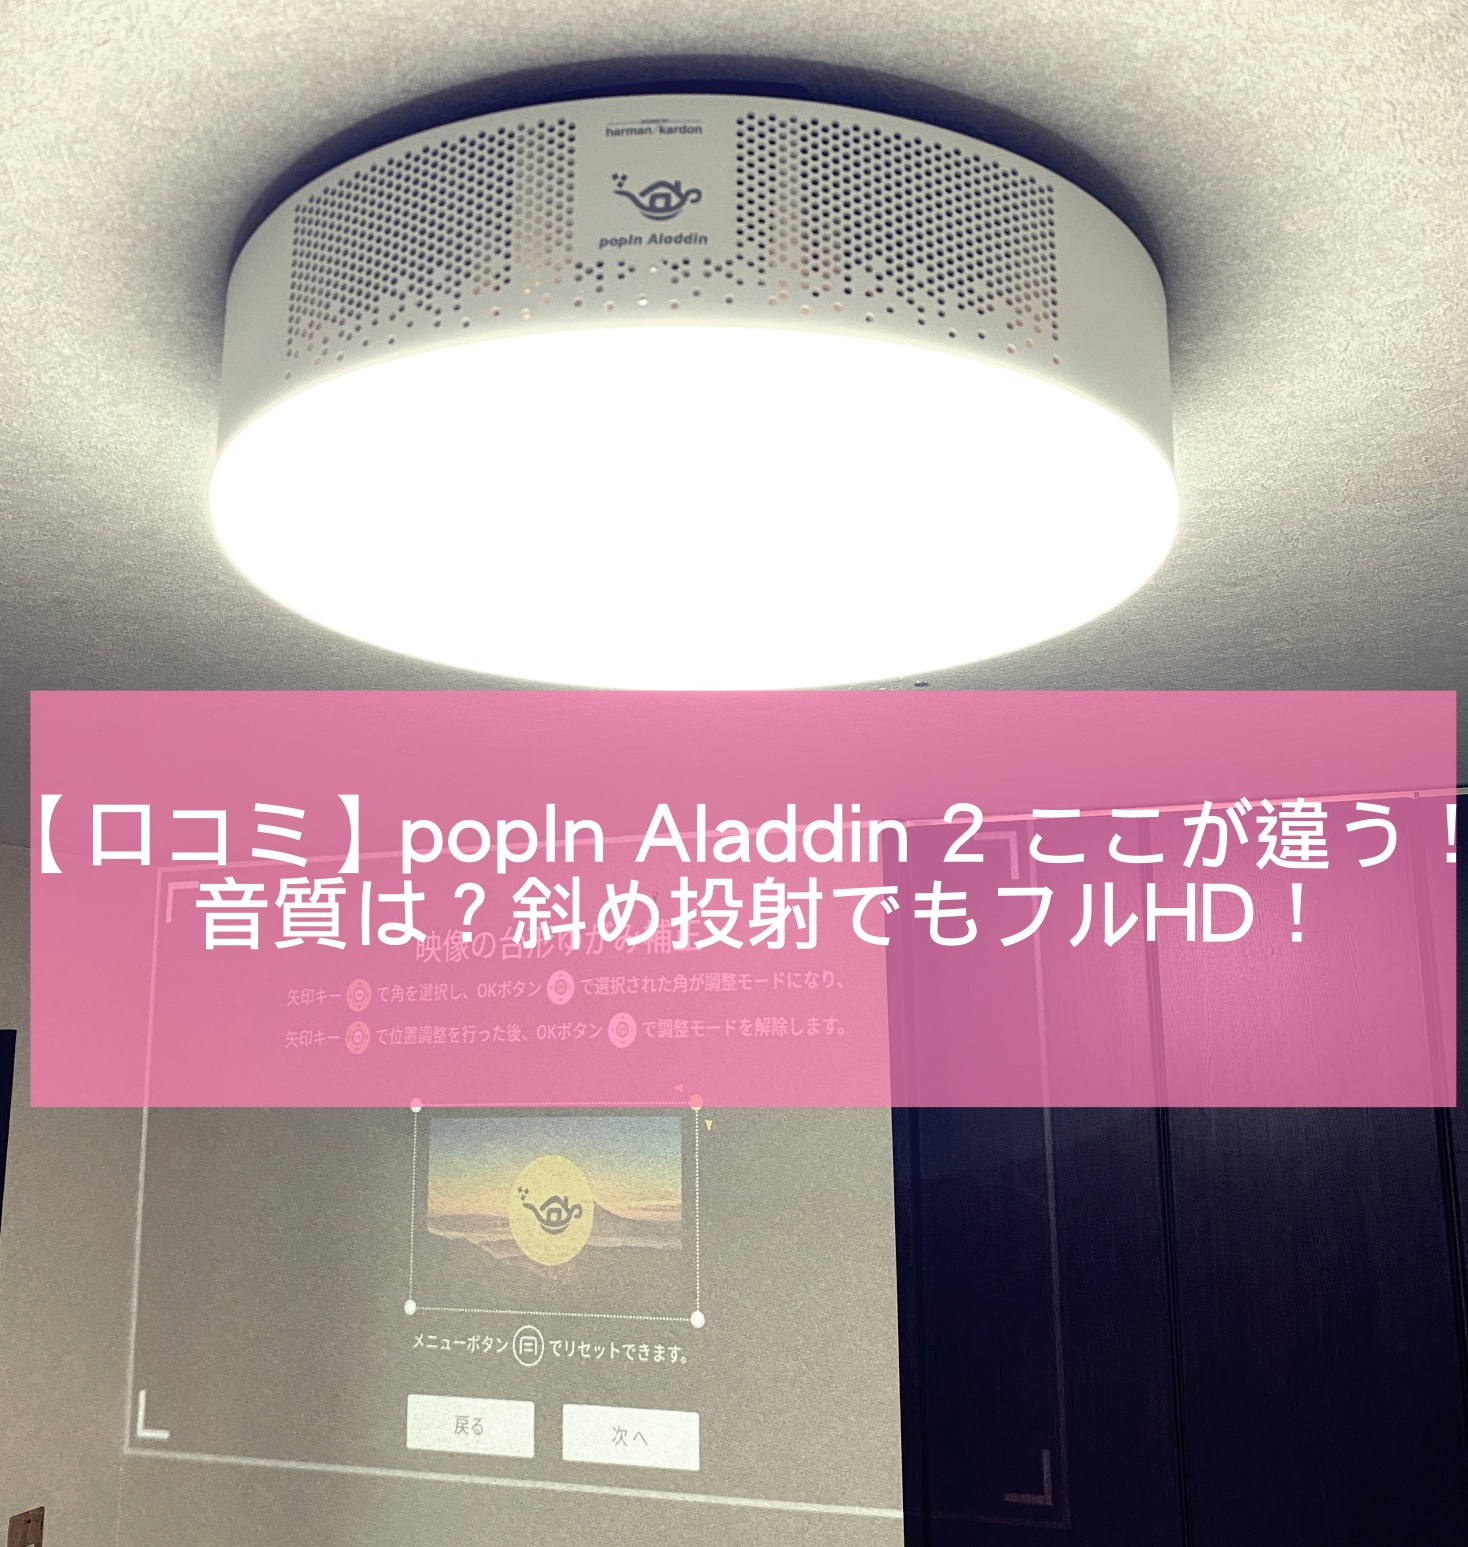 史博物館 popIn 2（ポッピンアラジン2） Aladdin プロジェクター